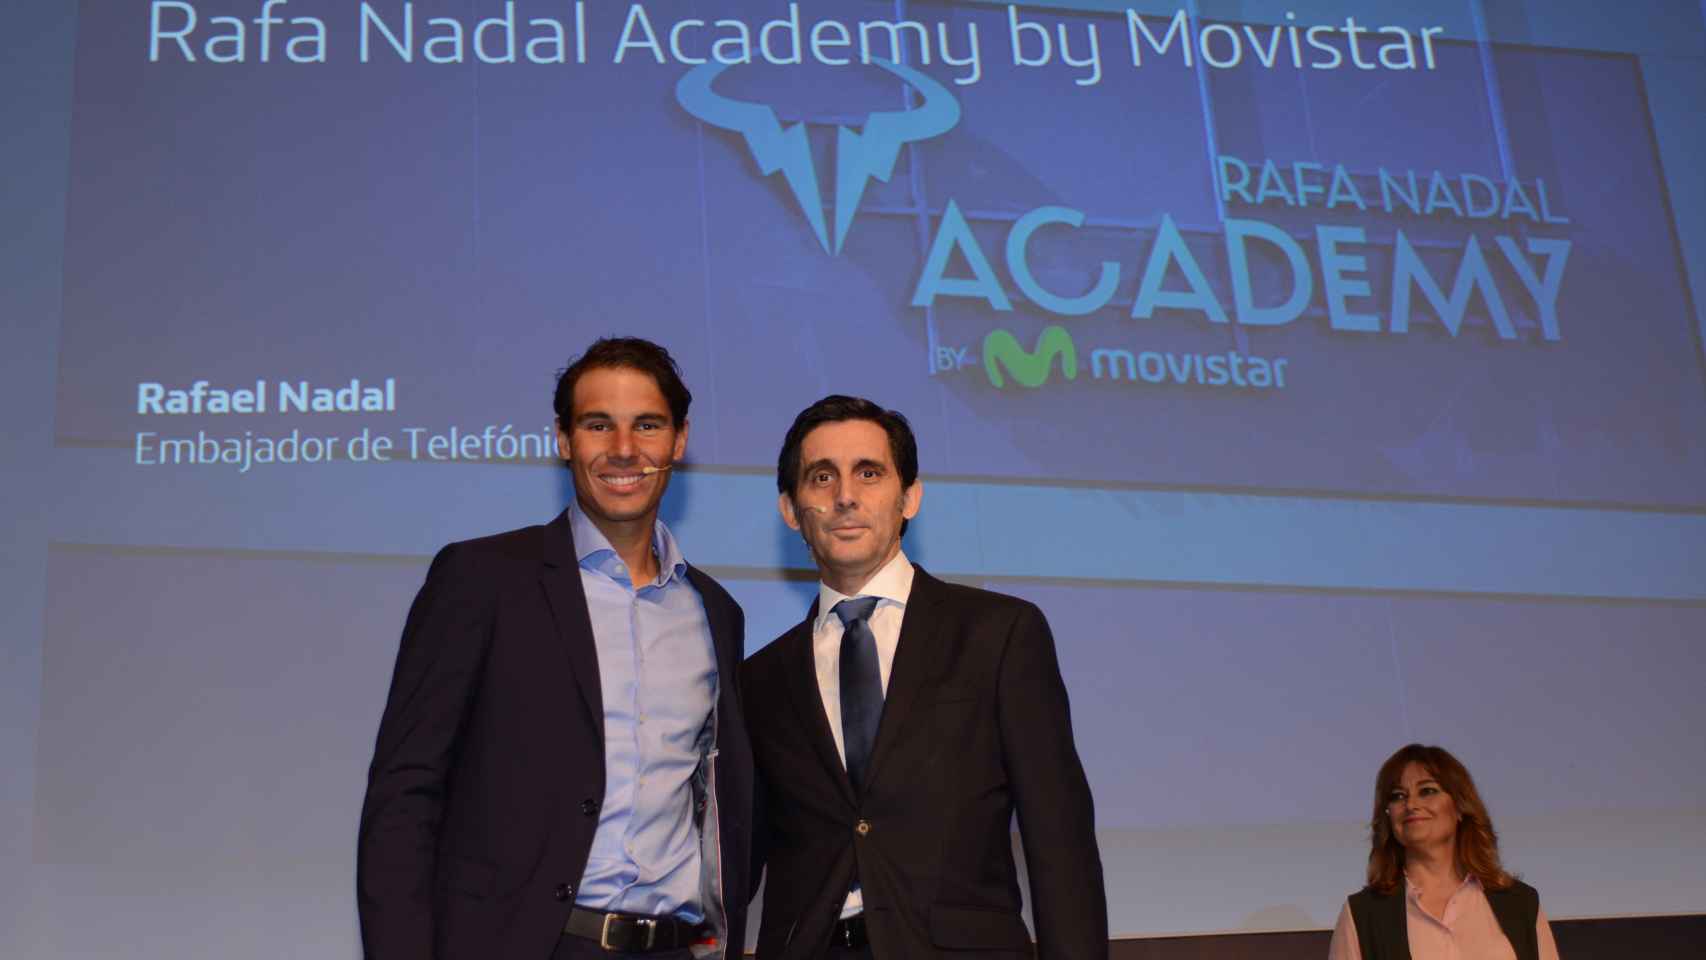 De izquierda a derecha: Rafael Nadal, tenista y embajador de Telefónica José María Álvarez-Pallete, presidente ejecutivo de Telefónica SA